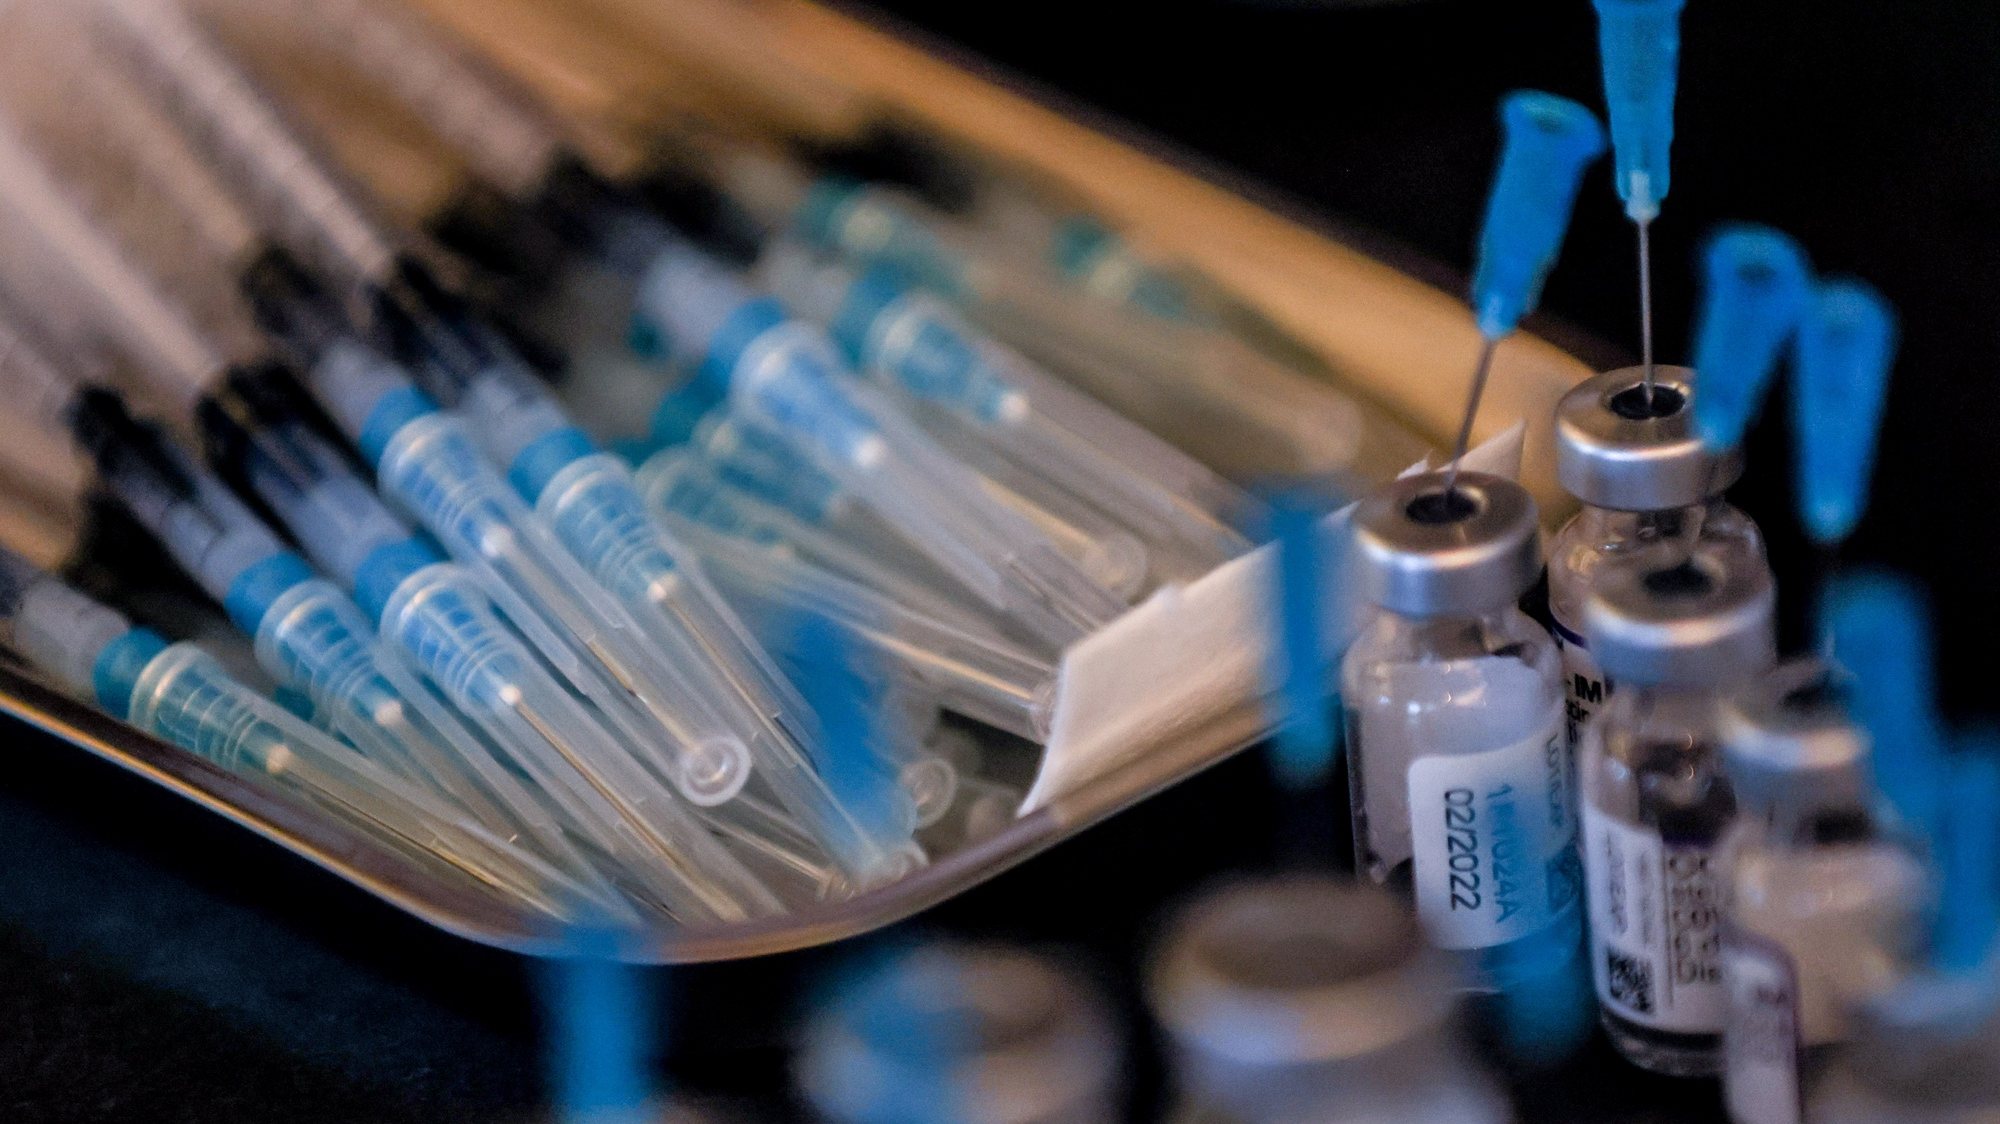 Mais de 3,4 milhões de vacinas contra gripe e covid-19 administradas